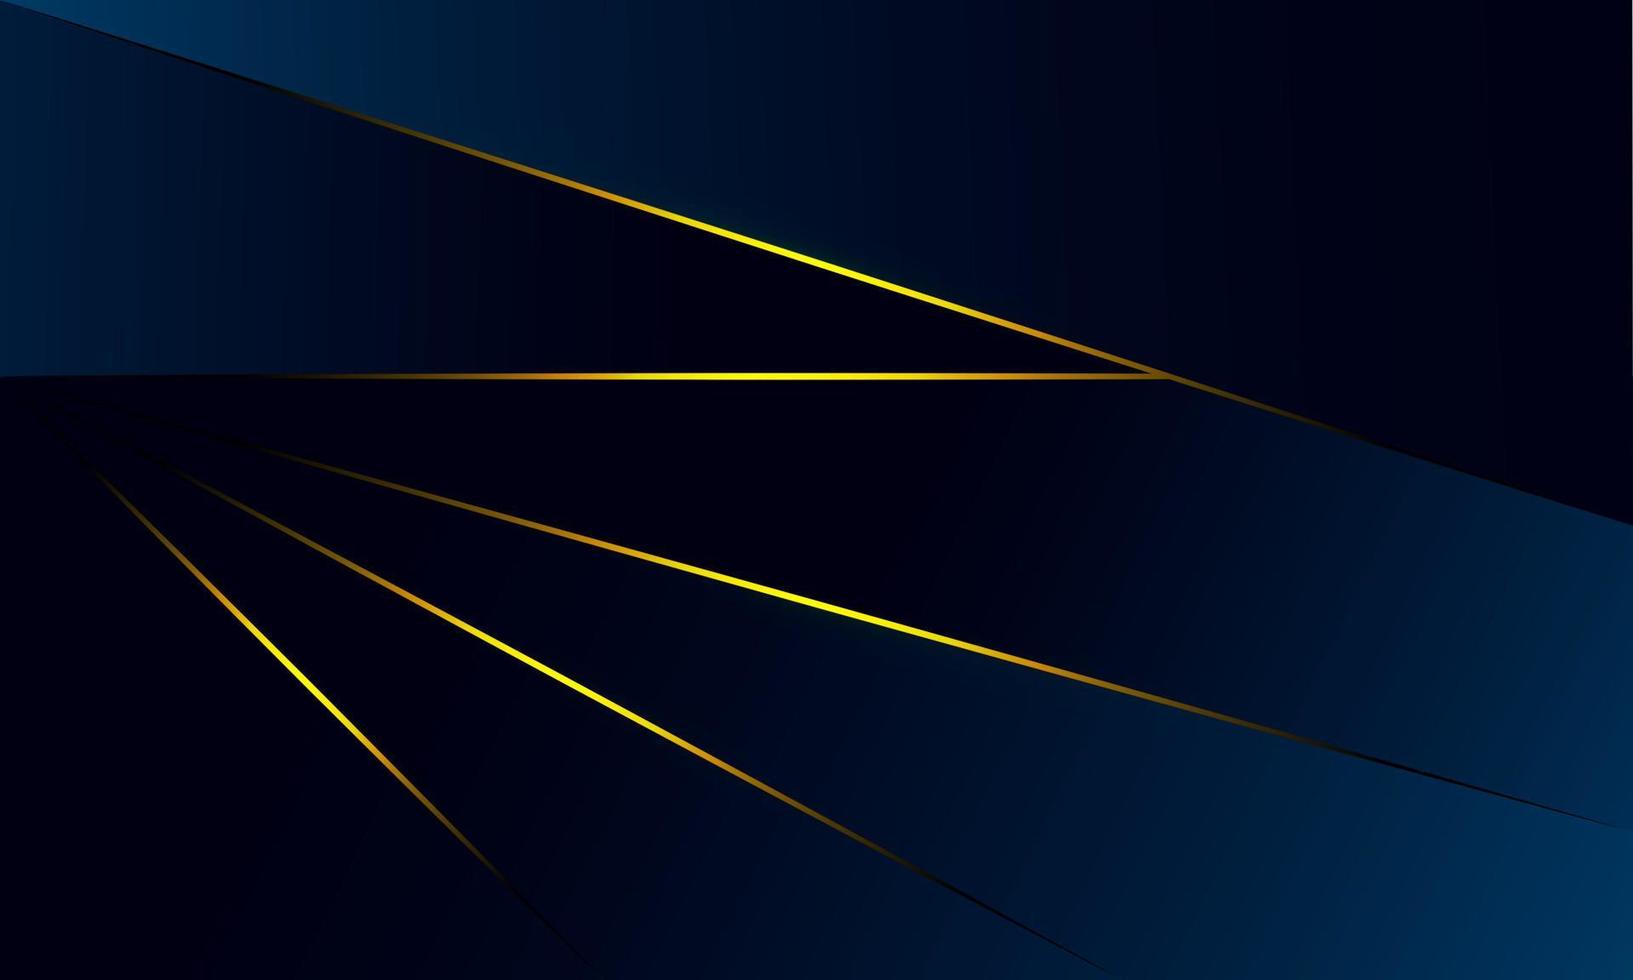 i triangoli blu astratti del poligono modellano lo sfondo con la linea dorata e lo stile di lusso dell'effetto luminoso. illustrazione disegno vettoriale concetto di tecnologia digitale.